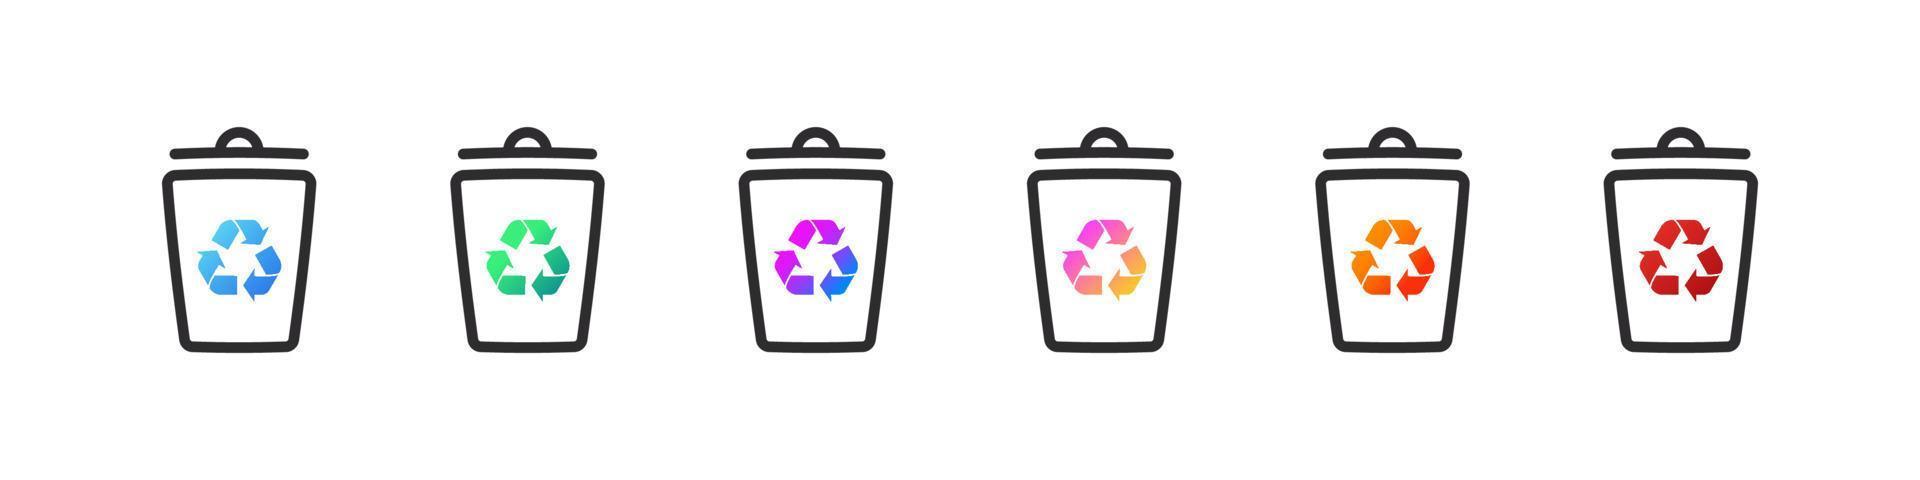 recycle bakken set. pictogrammen van uitschot blikjes voor verschillend types van afval. vector illustratie